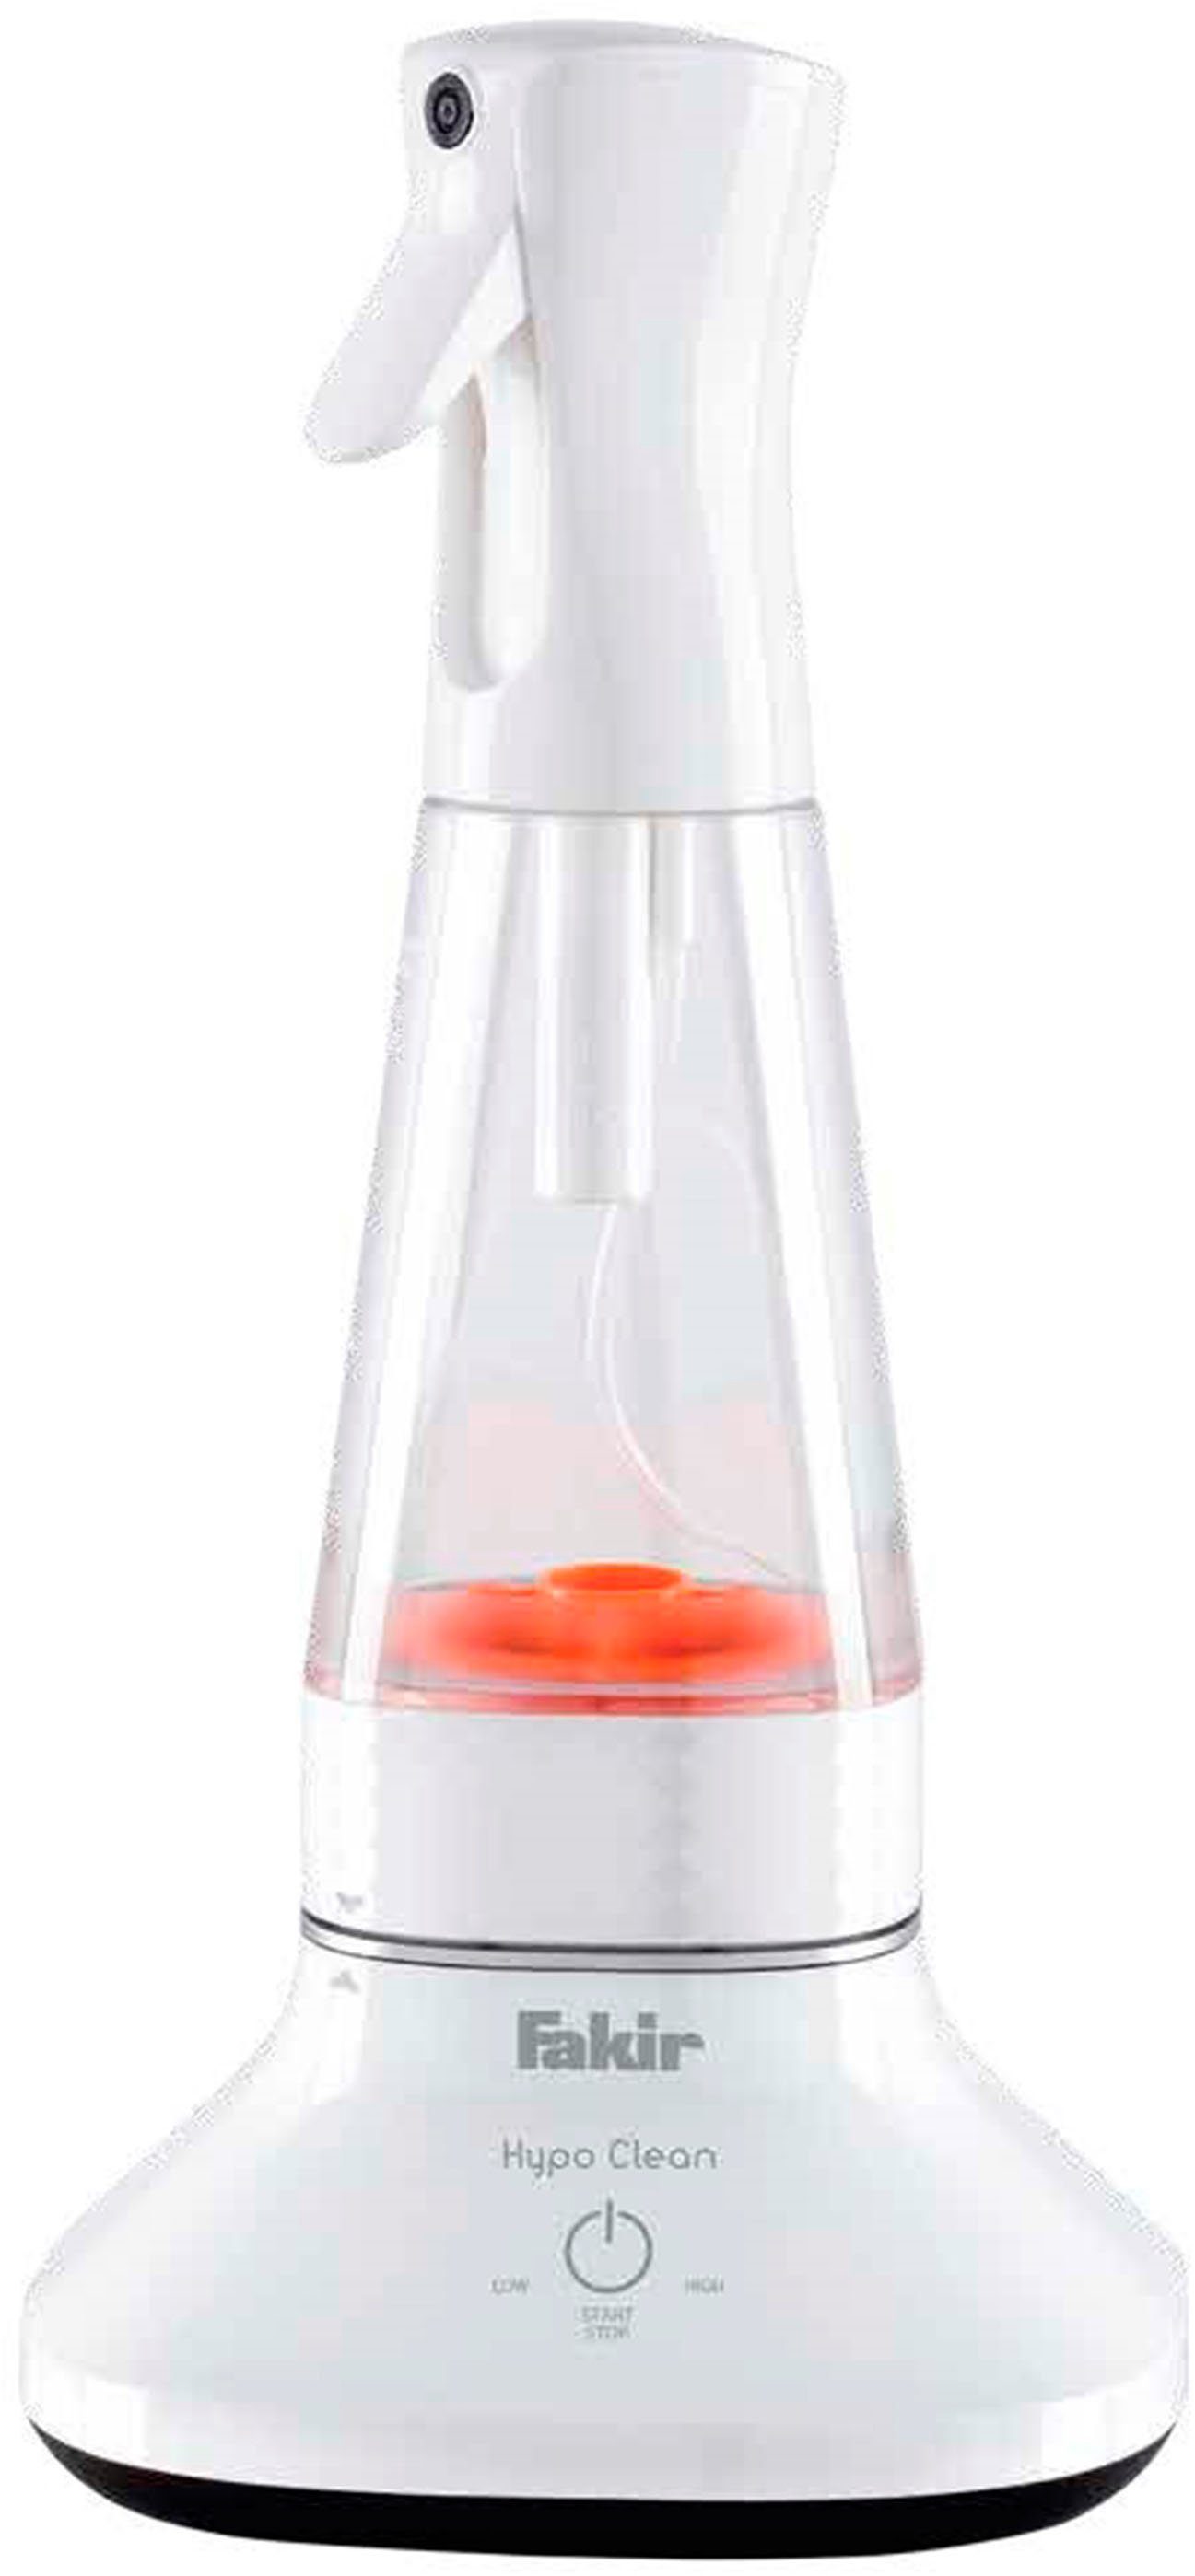 FAKIR Wassersterilisiergerät Hypo Clean, großes Fassungsvermögen (400 ml)